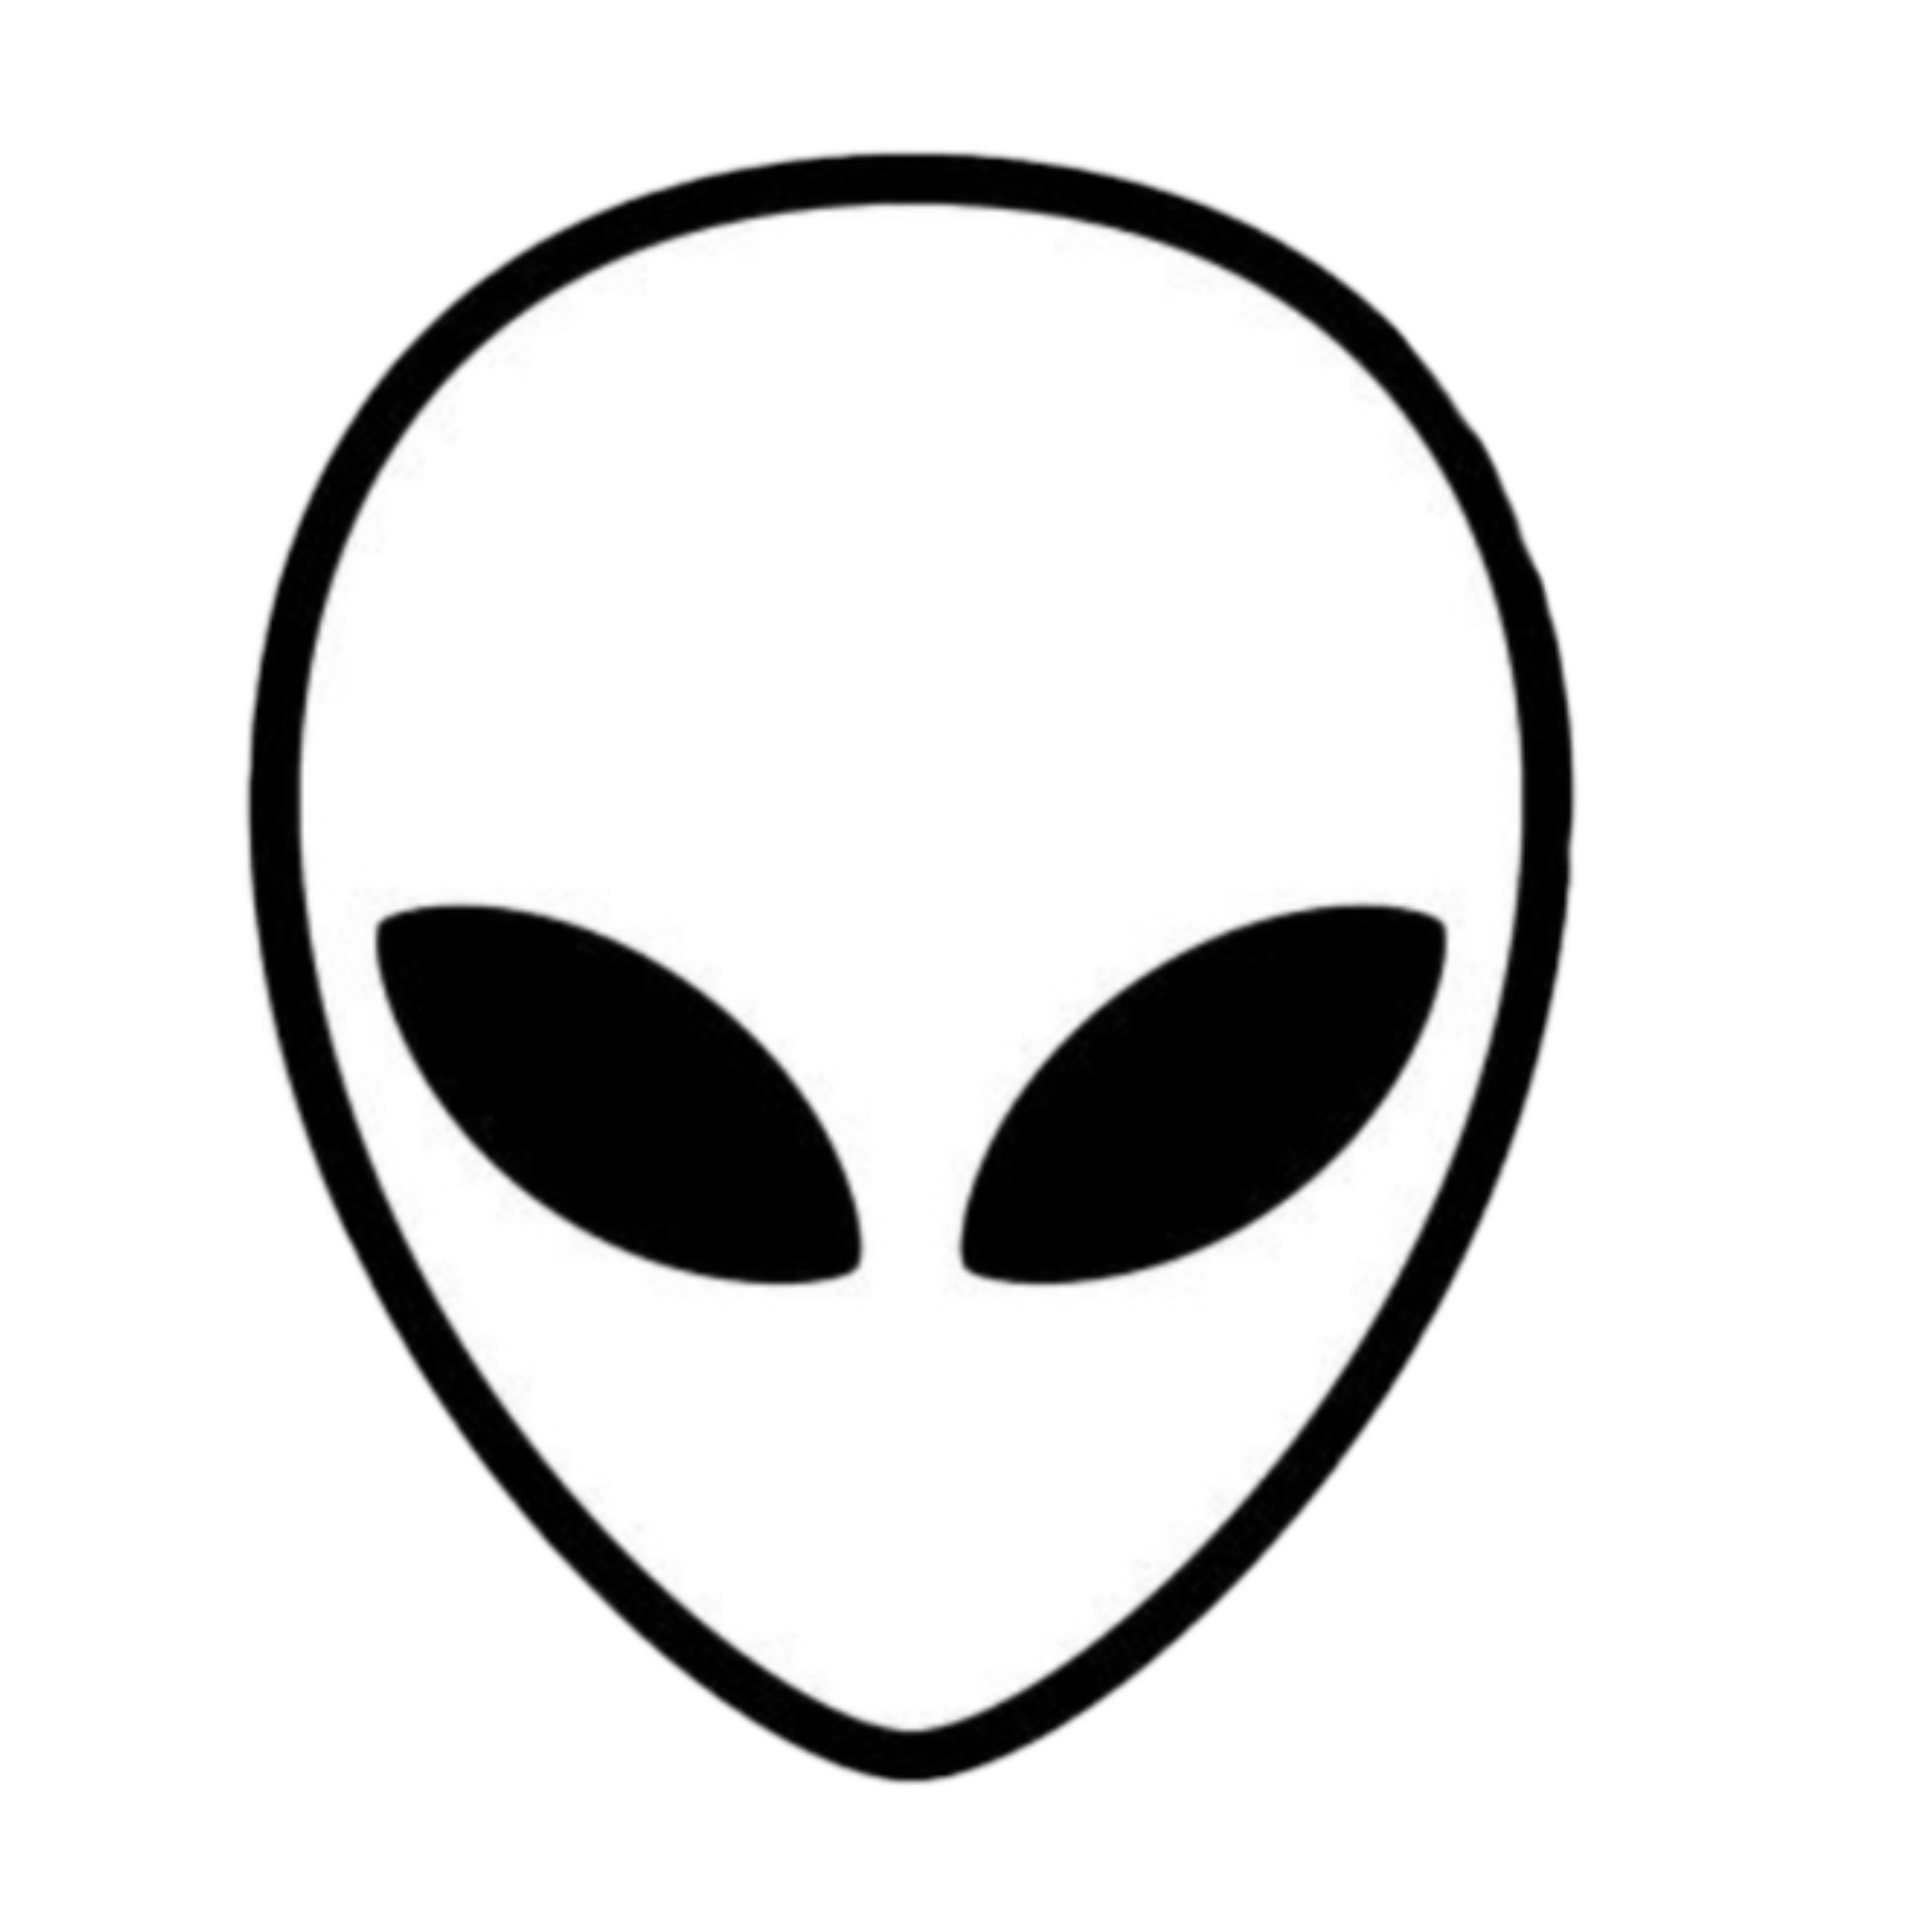 Инопланетянен. Значок инопланетянина. Голова инопланетянина логотип.